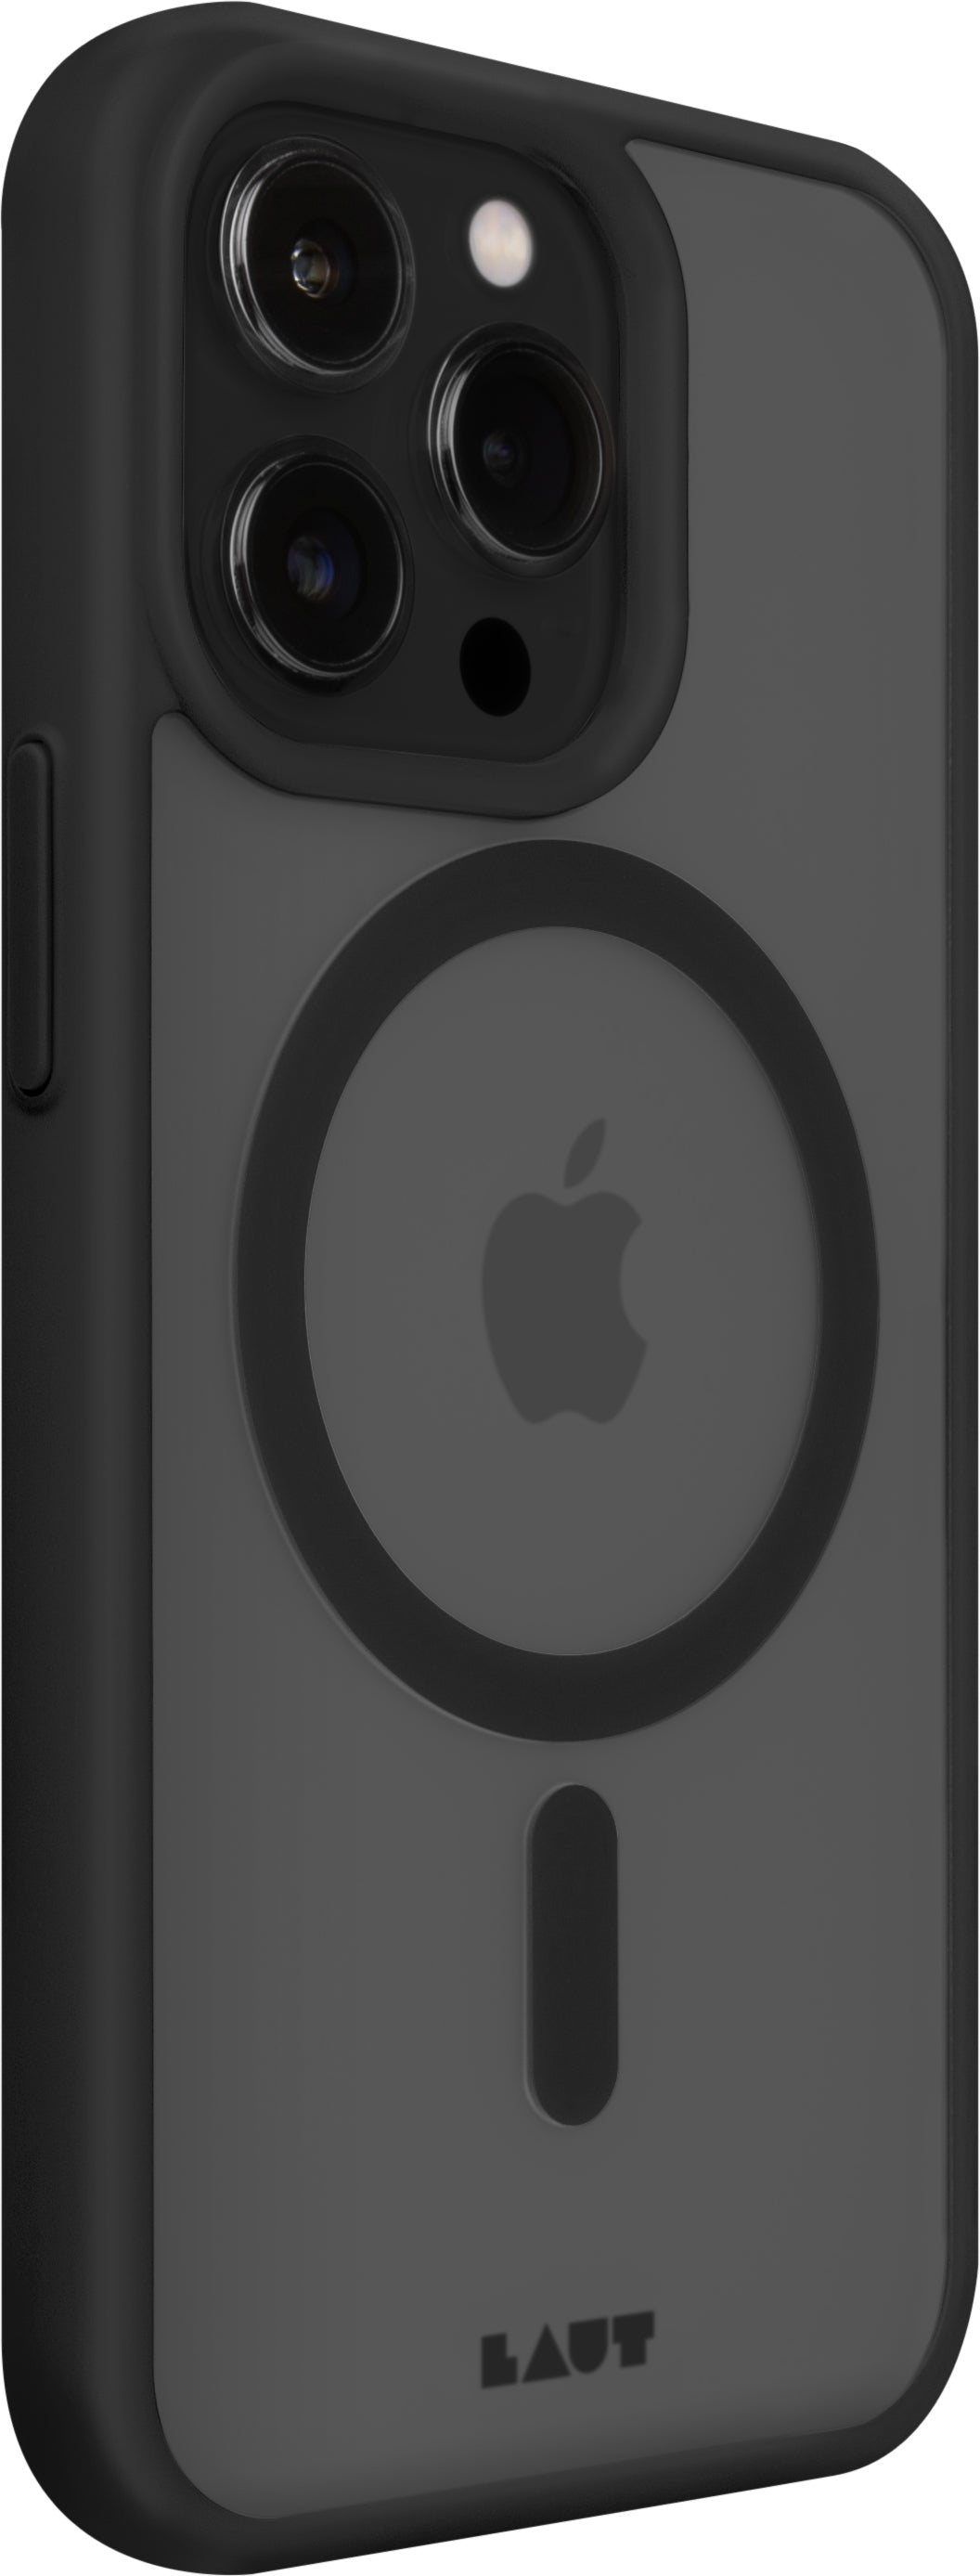 Funda para iPhone 14 Huex Protect de Laut iPhone 14 Pro Max Negro - Rossellimac